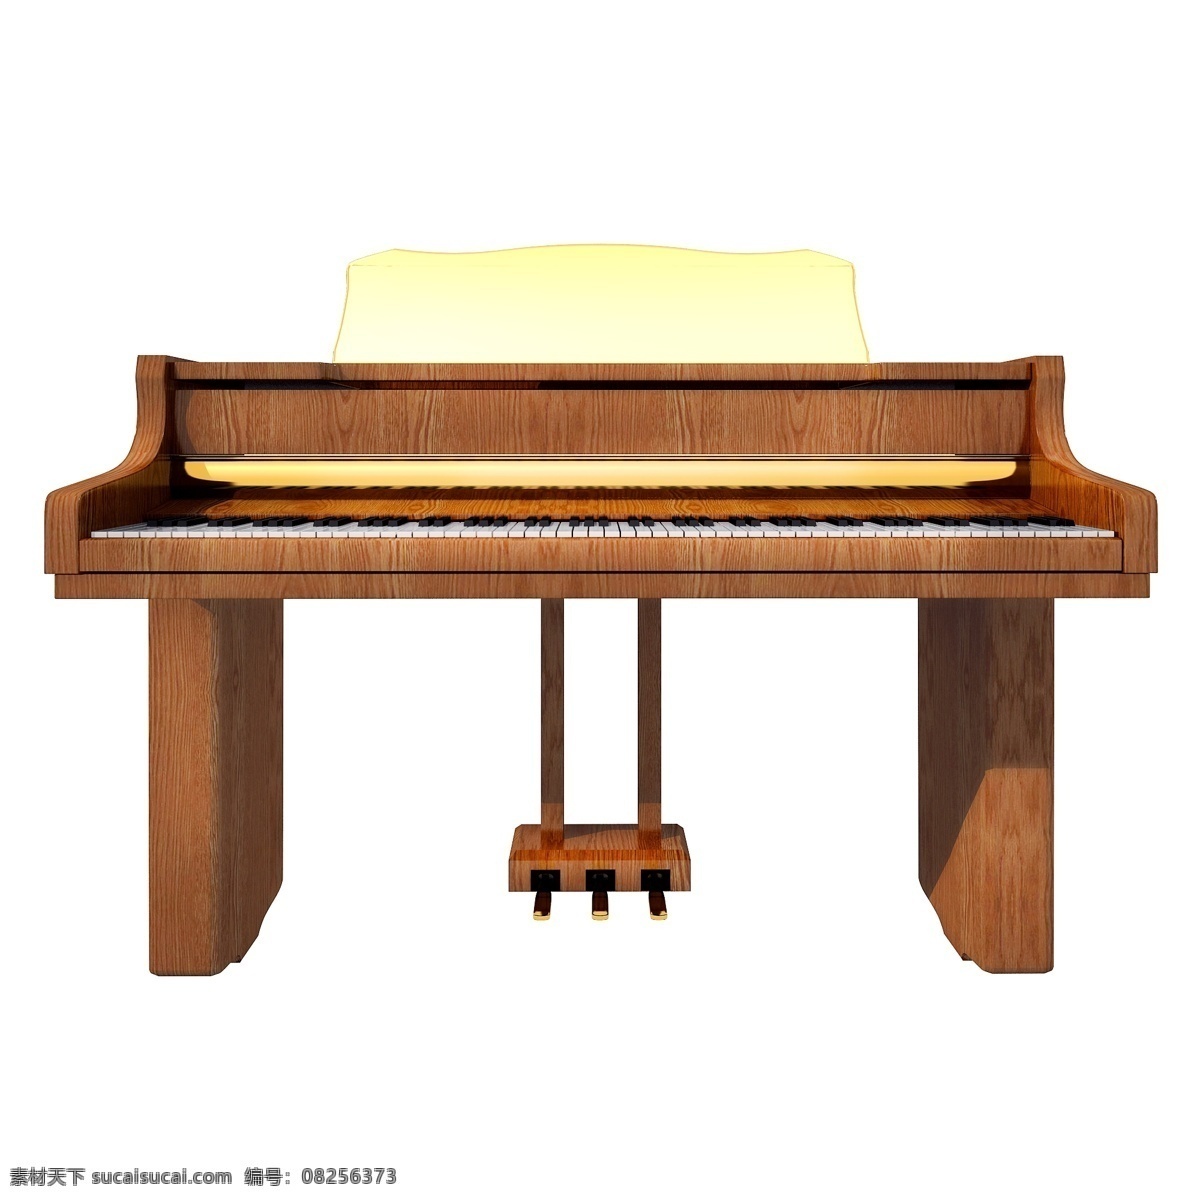 立体 质感 钢琴 图 精致 镀金 仿真 3d 木质 古董钢琴 创意 套图 png图